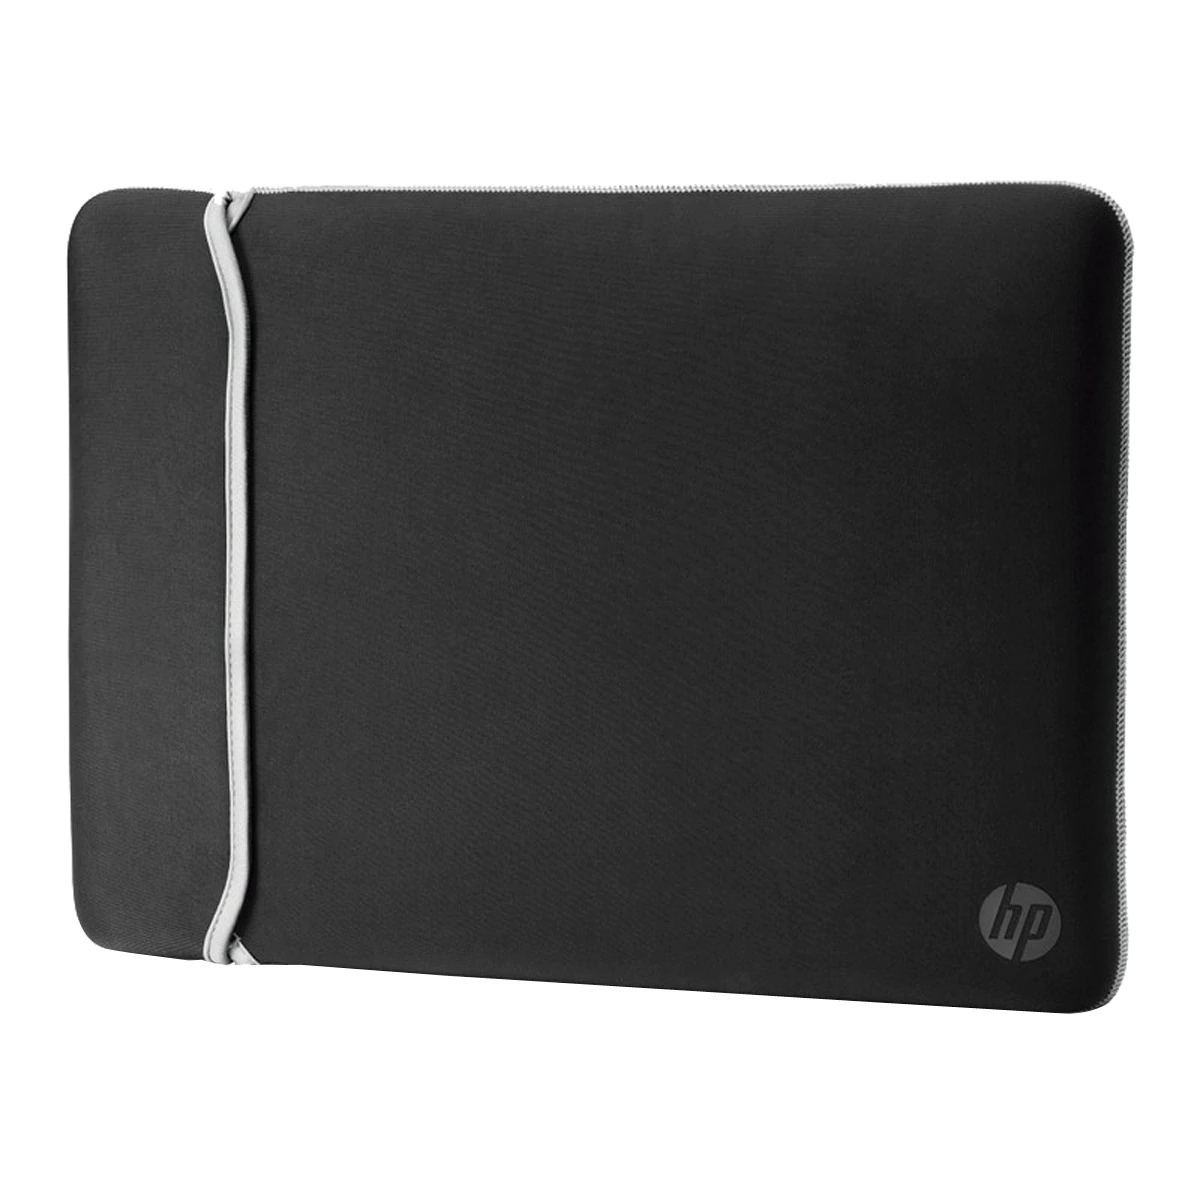 Funda de neopreno reversible negro/plata HP para portátiles hasta 39,62 cm (15,6″)